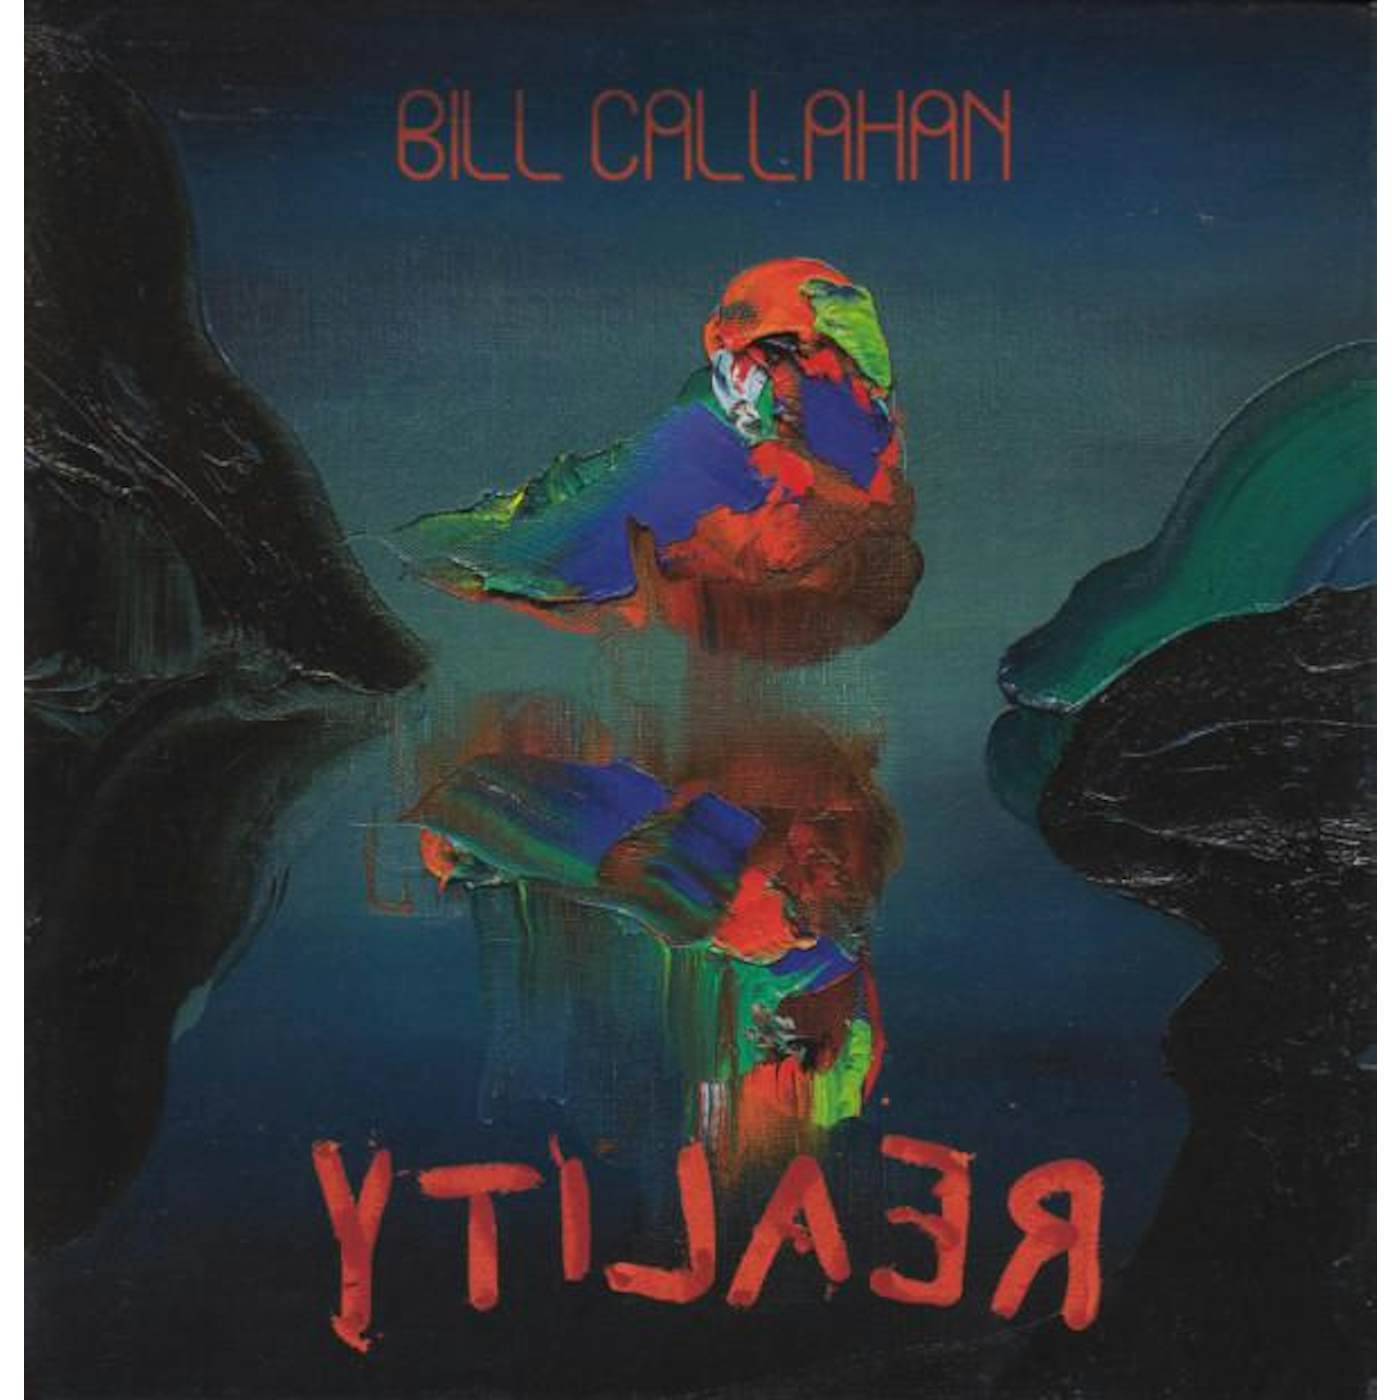 Bill Callahan YTI⅃AƎЯ CD